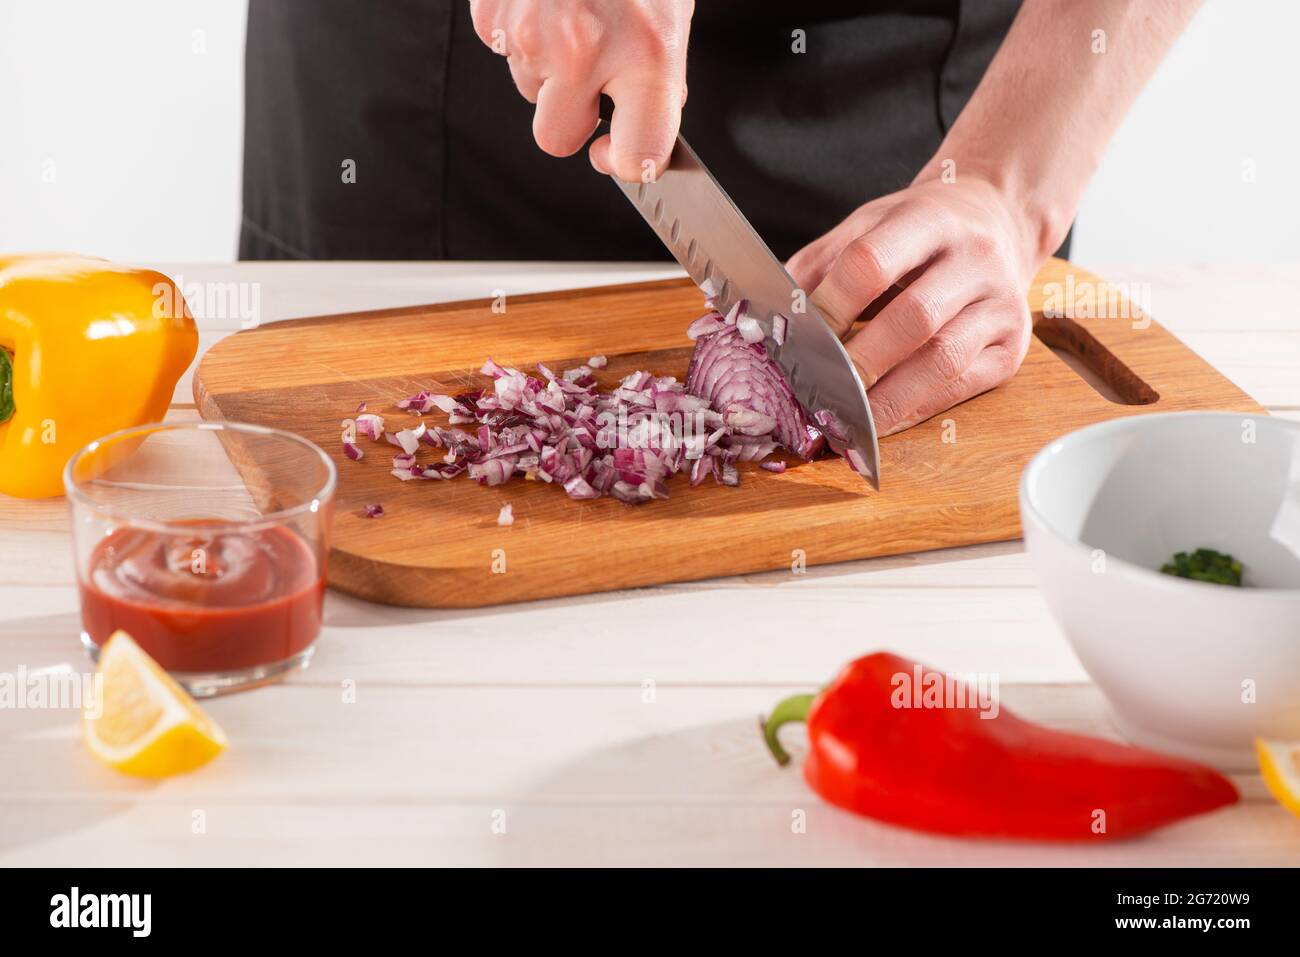 Primo piano sulle mani dello chef che tagliano la cipolla con un coltello santoku Foto Stock